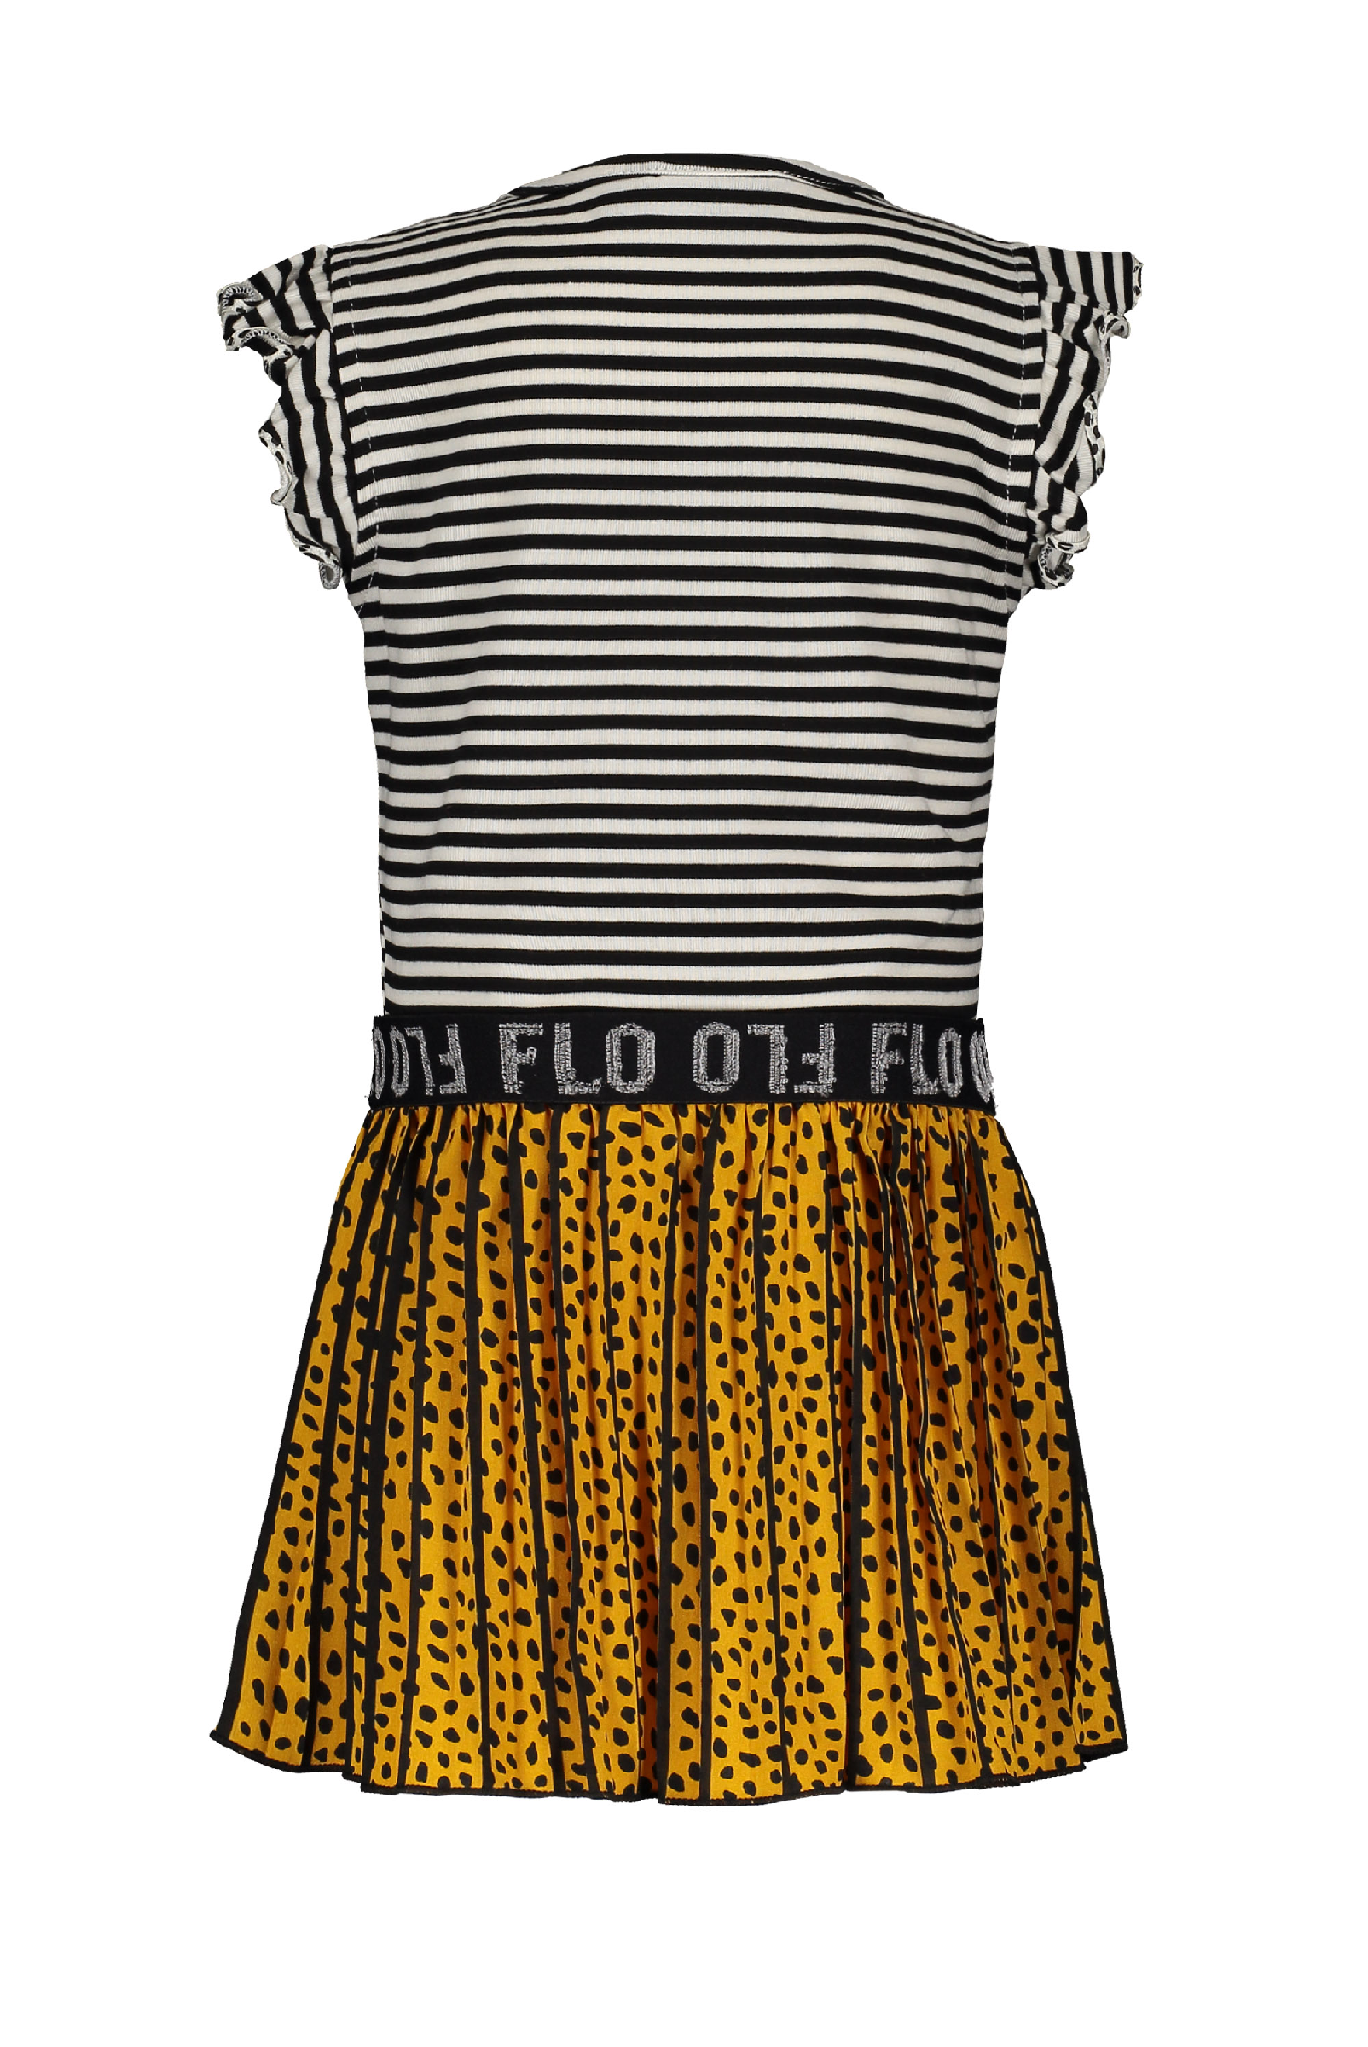 Meisjes Flo baby girls ruffle jersey dress with AO oker plisse skirt van Flo in de kleur Oker in maat 92.